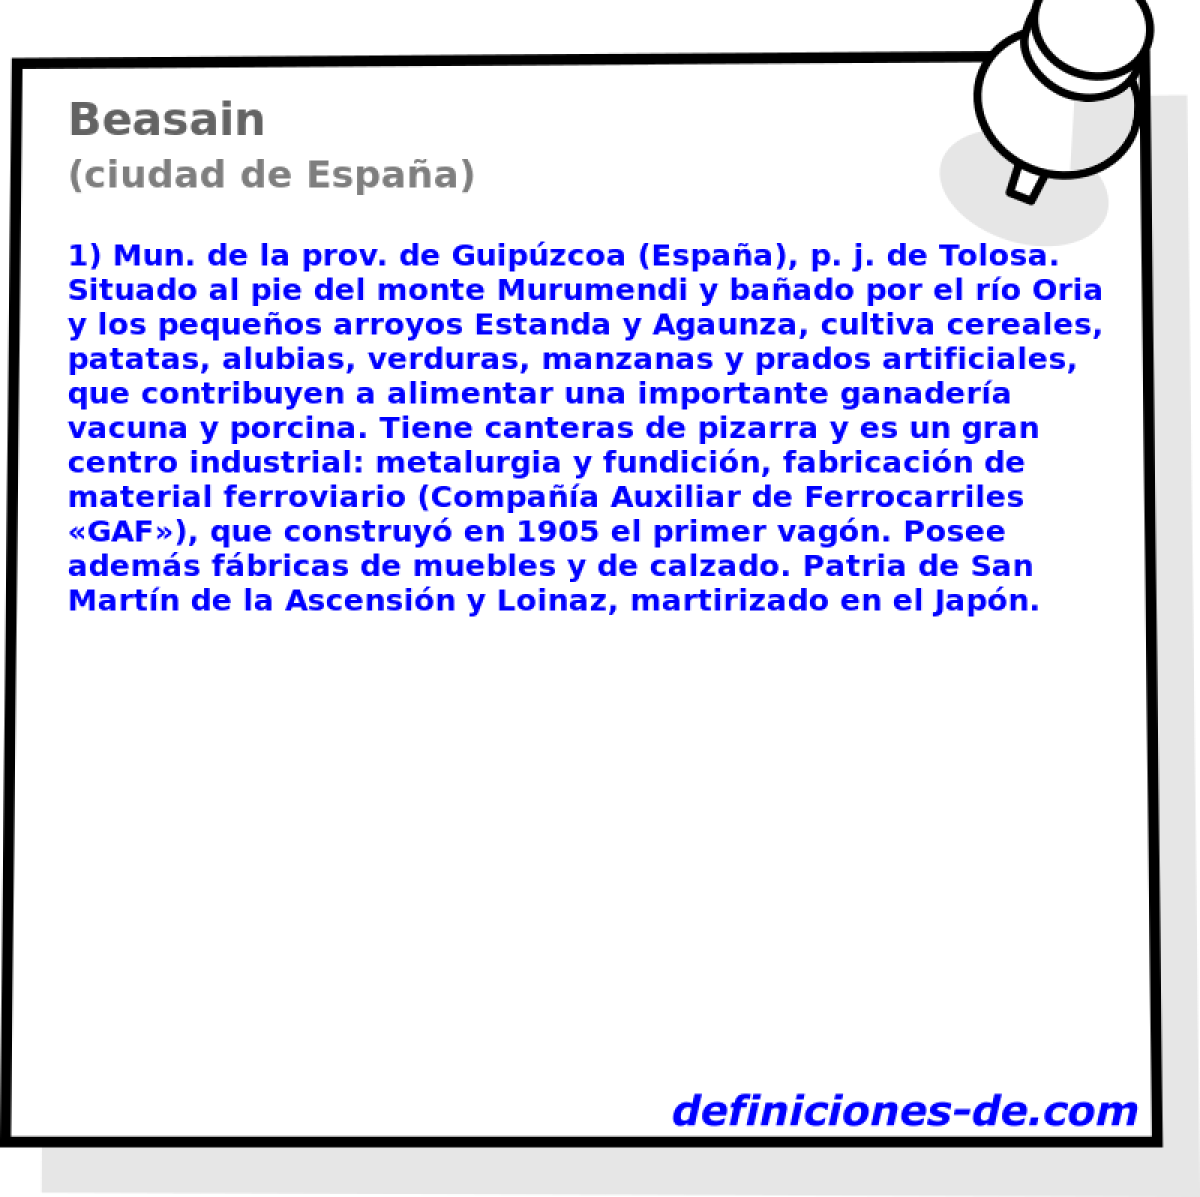 Beasain (ciudad de Espaa)